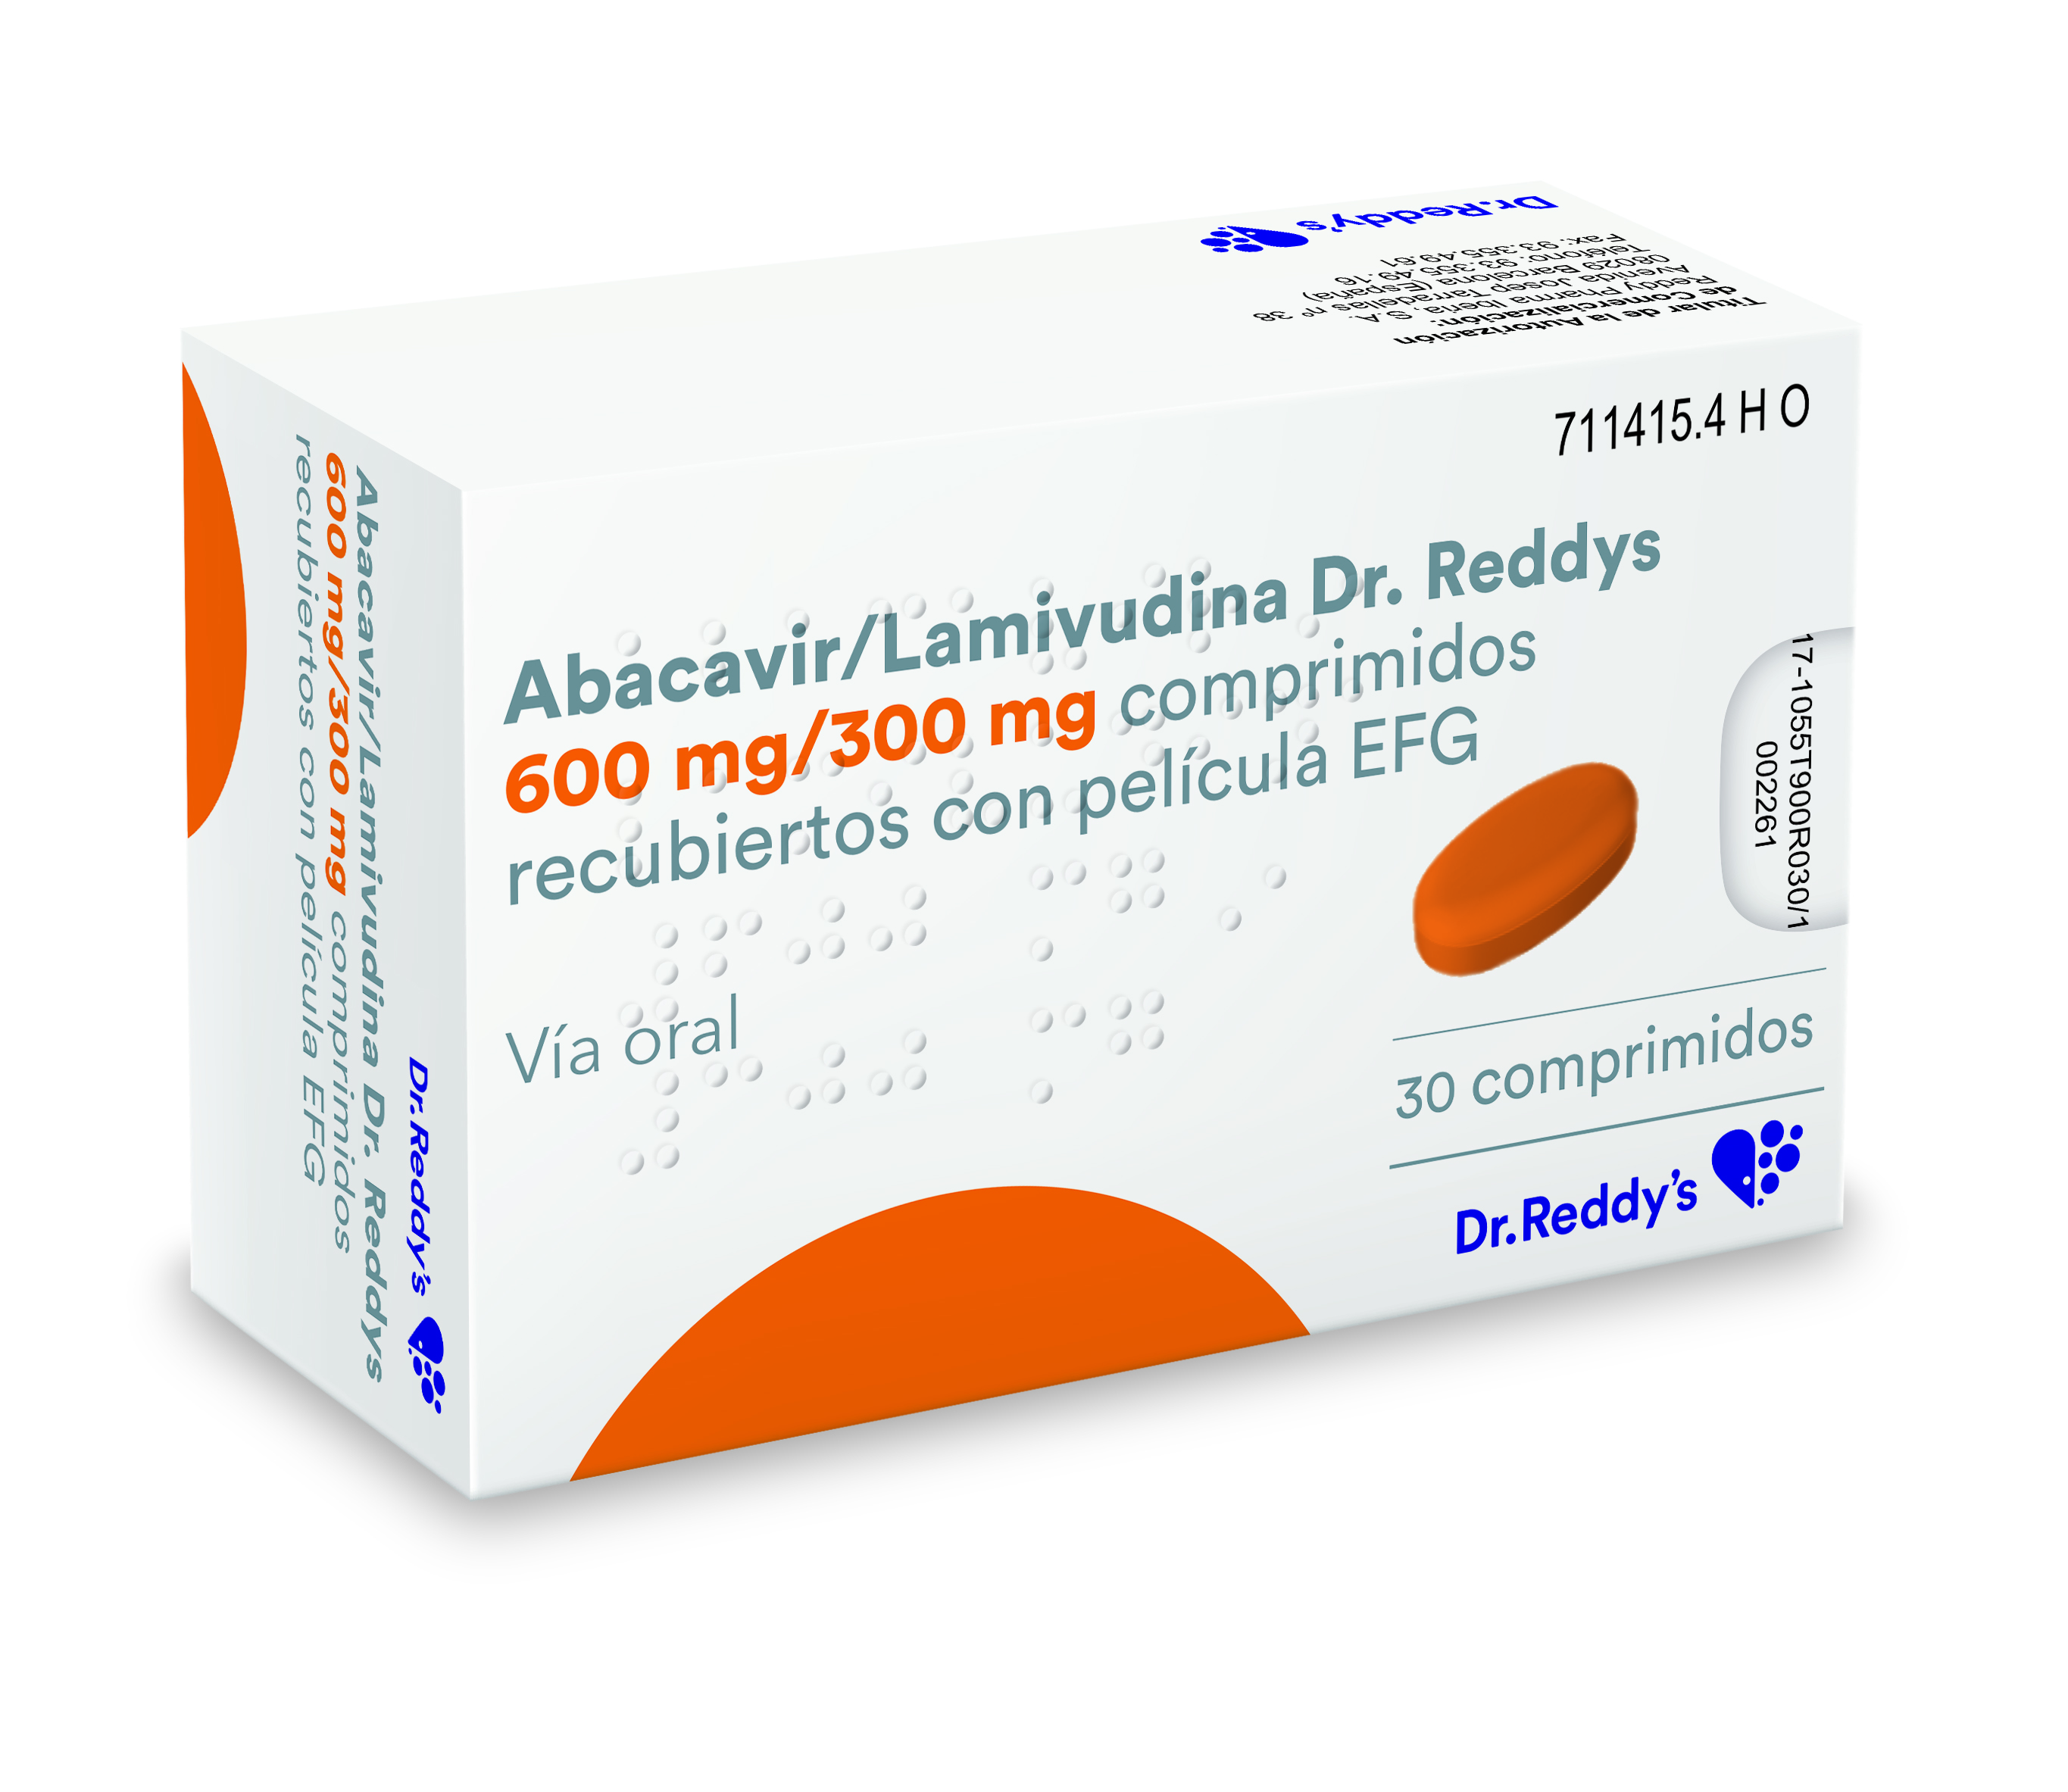 ABACAVIR/LAMIVUDINA DR. REDDYS EFG 600 mg/300 mg 30 COMPRIMIDOS RECUBIERTOS